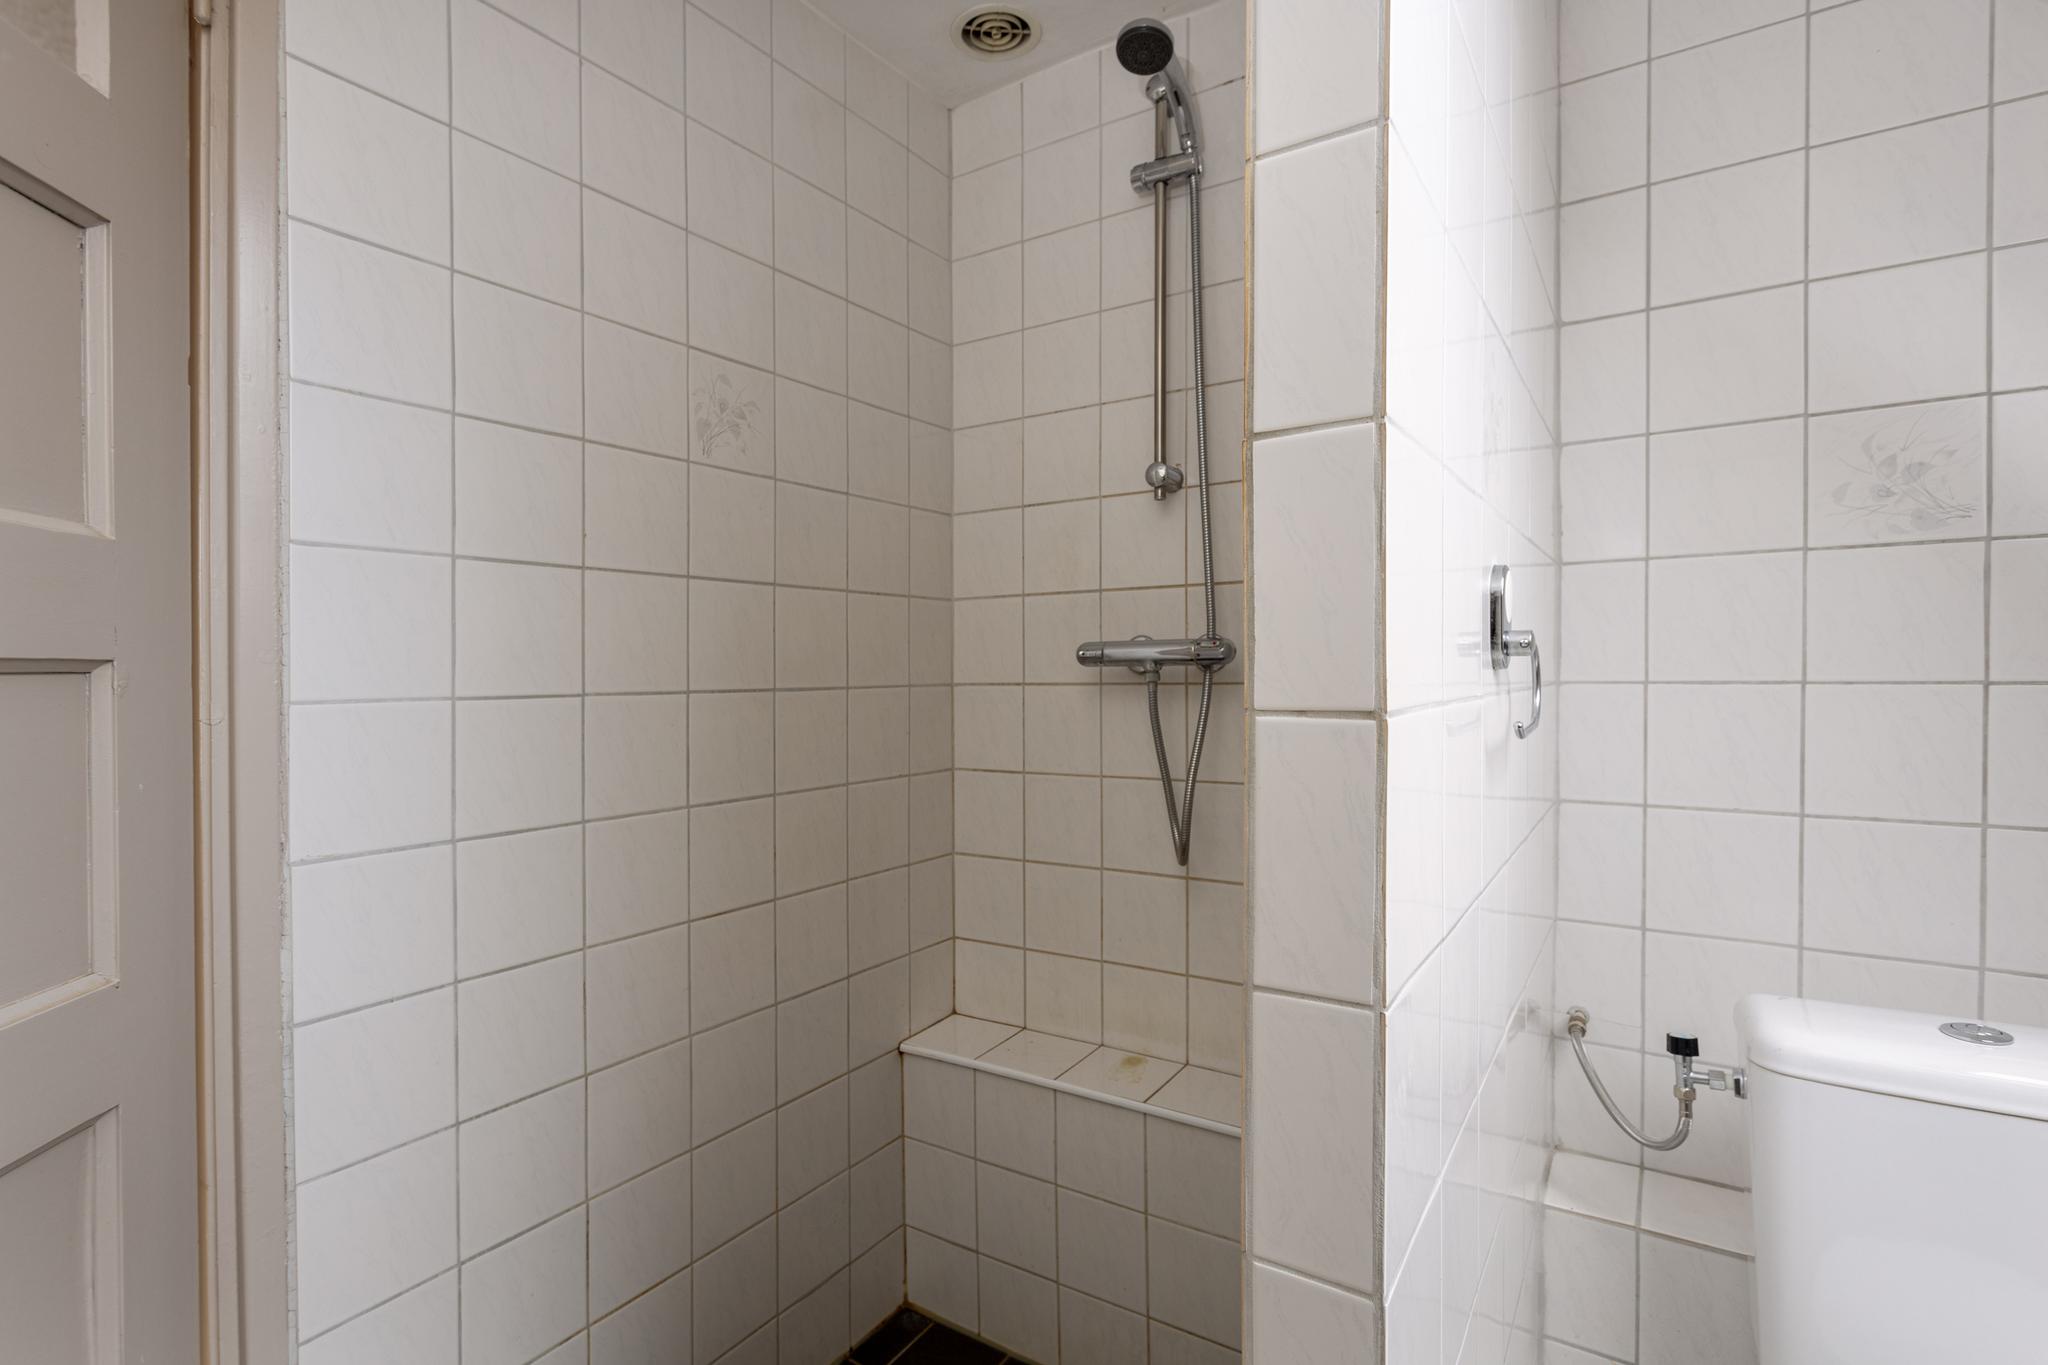 Badkamer richting douche, Zijlstraat 16 Heeswijk-dinther